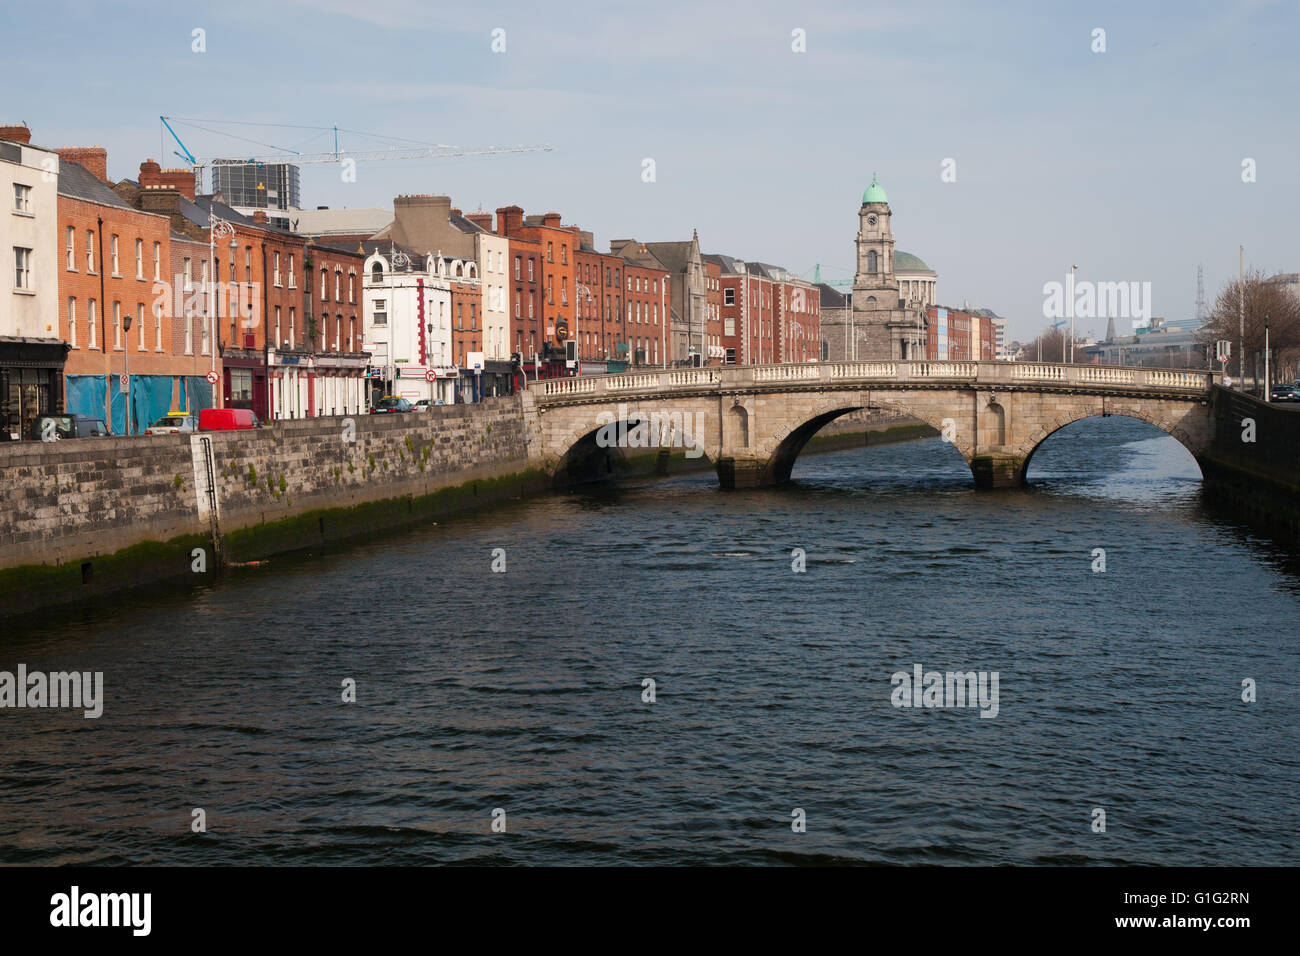 El horizonte de la ciudad de Dublín en Irlanda, Mellows Puente sobre el río Liffey, paisaje urbano Foto de stock